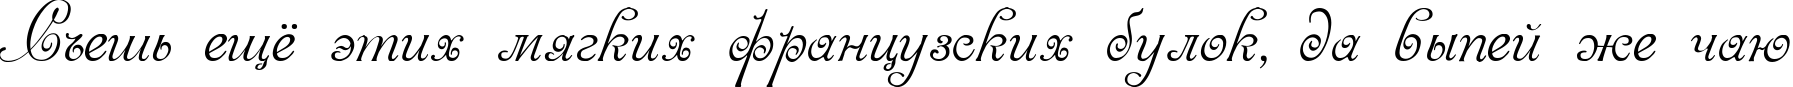 Пример написания шрифтом Venecia текста на русском